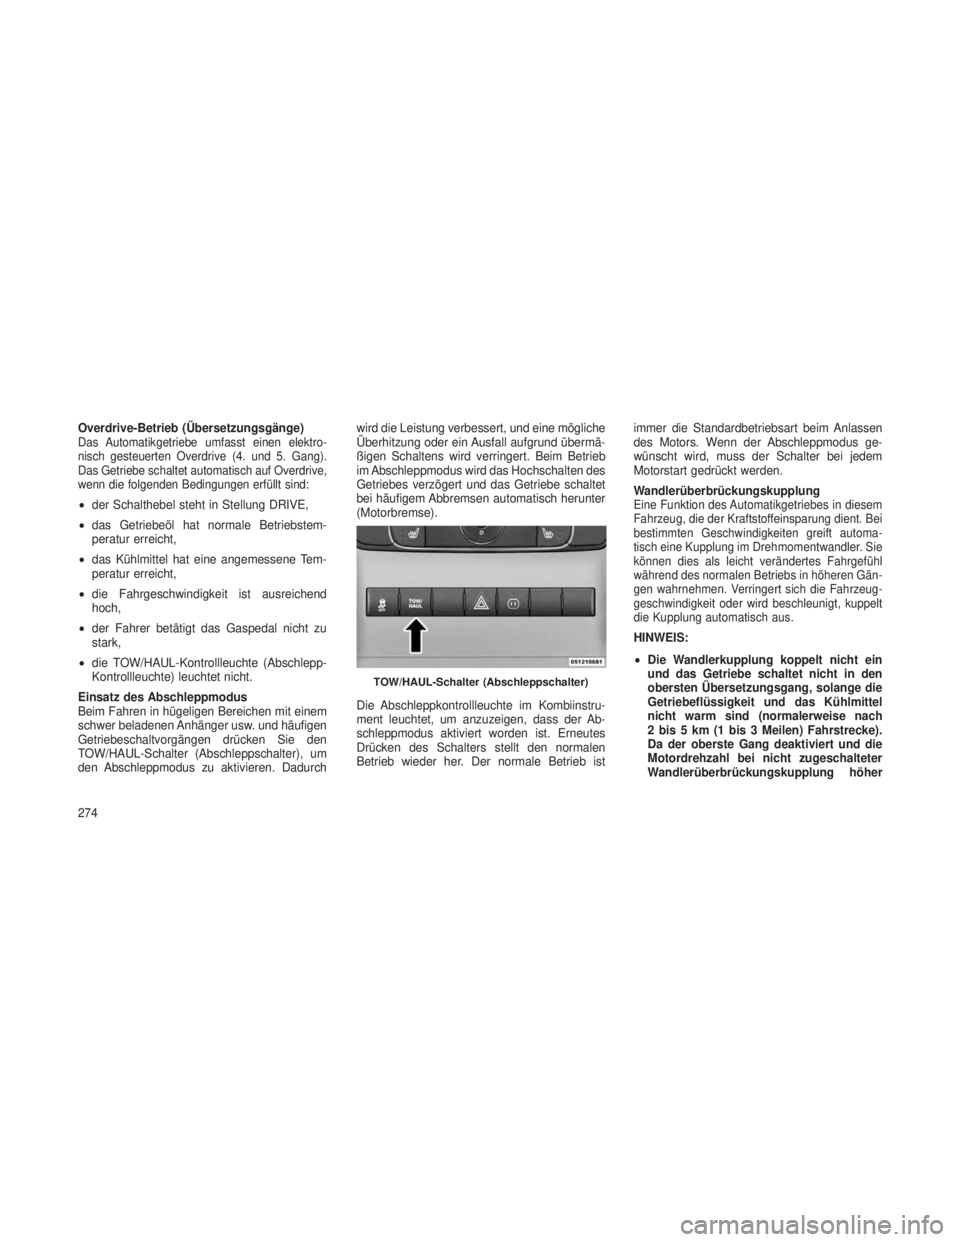 JEEP GRAND CHEROKEE 2013  Betriebsanleitung (in German) Overdrive-Betrieb (Übersetzungsgänge)Das Automatikgetriebe umfasst einen elektro-
nisch gesteuerten Overdrive (4. und 5. Gang).
Das Getriebe schaltet automatisch auf Overdrive,
wenn die folgenden Be